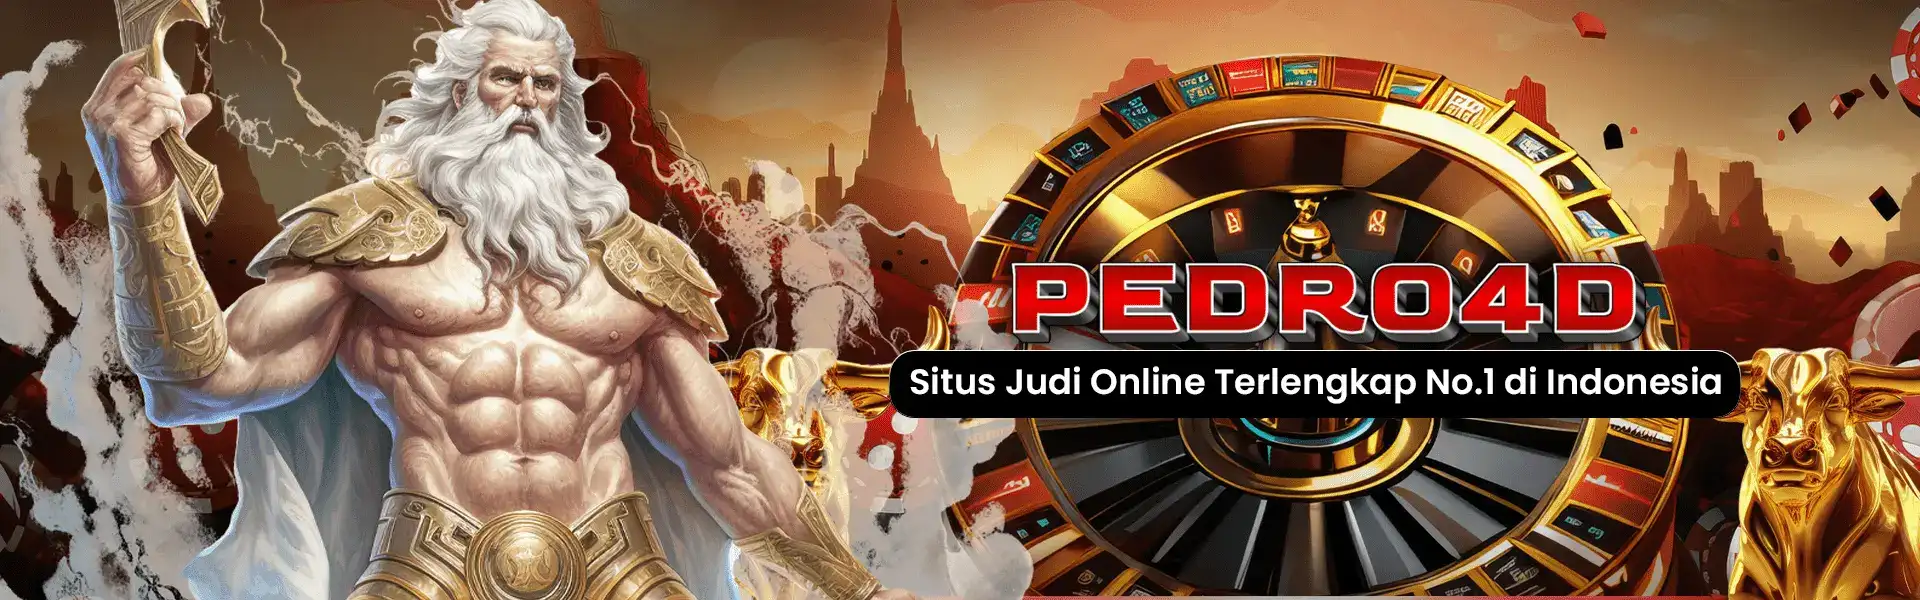 PEDRO4D: Situs Judi Online Terlengkap No.1 Indonesia